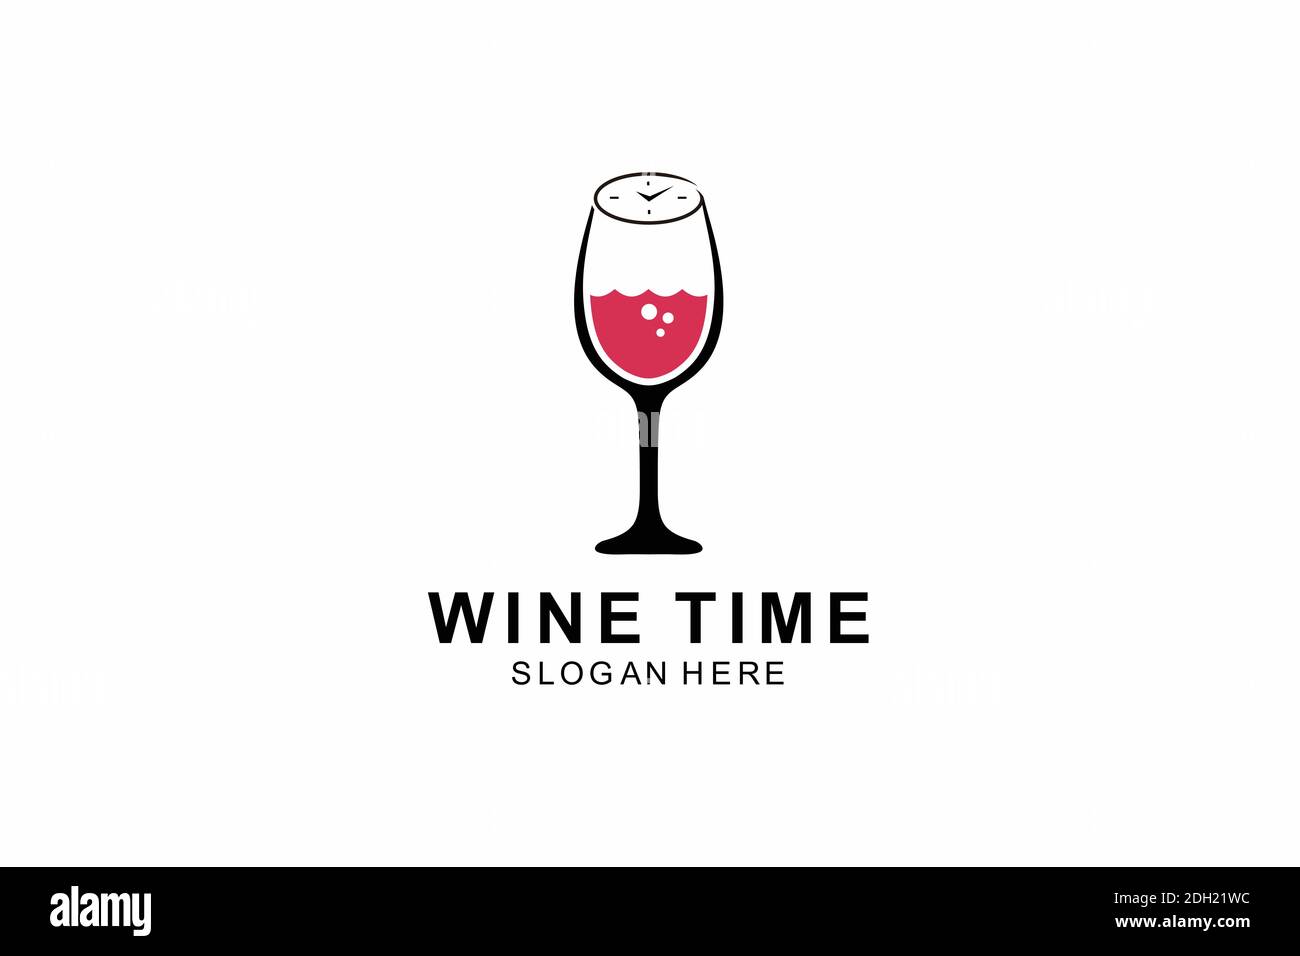 Weinglas-Logo. Weinzeitkonzept mit Uhr auf schwarzem Hintergrund  Stock-Vektorgrafik - Alamy